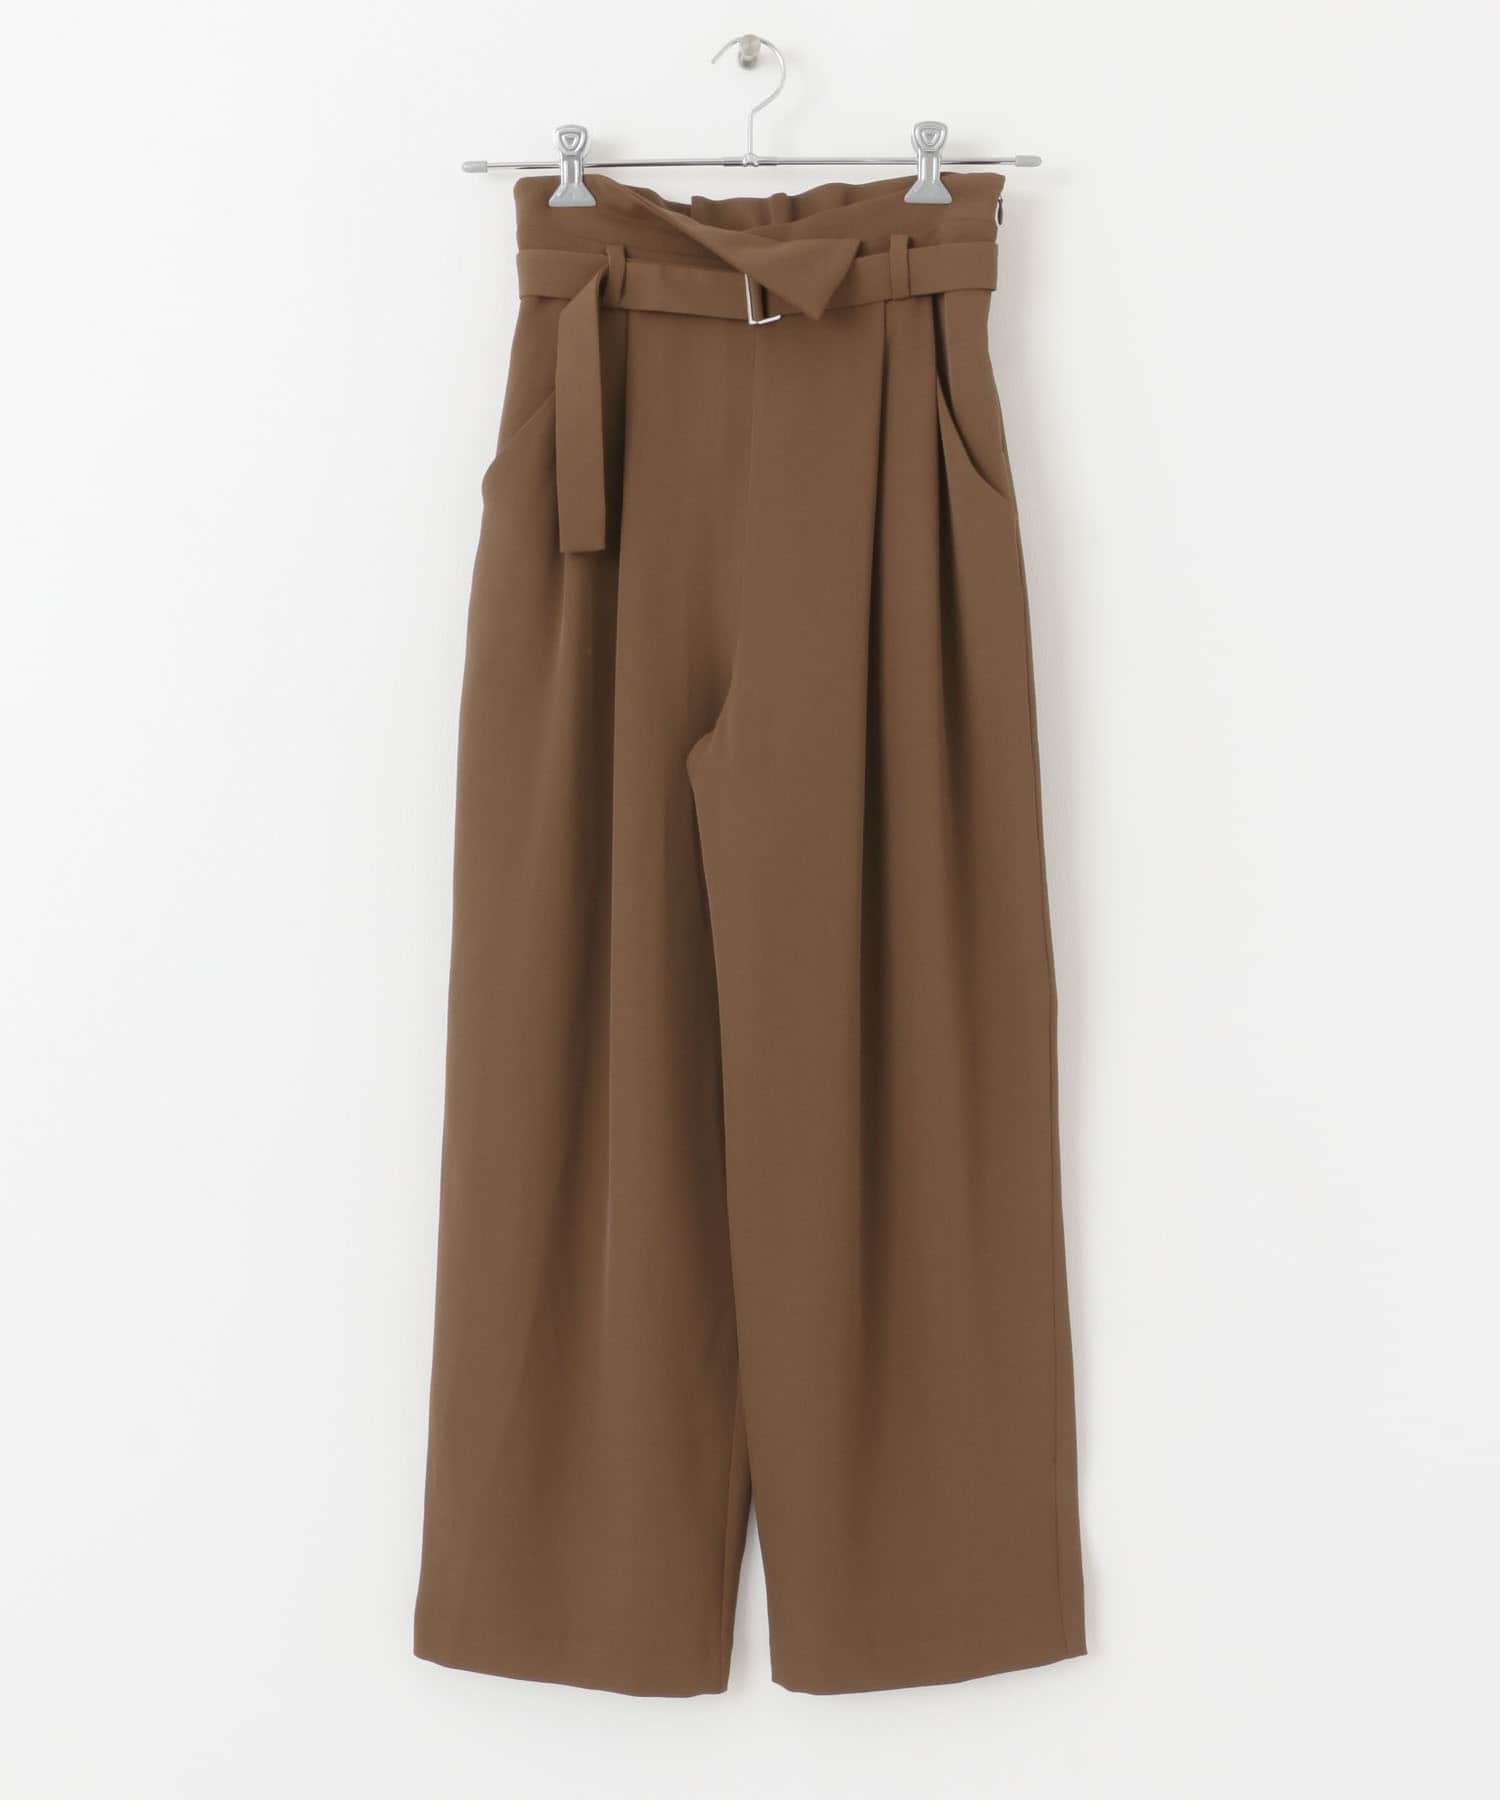 腰帶設計高腰褲(棕色-FREE-BROWN)